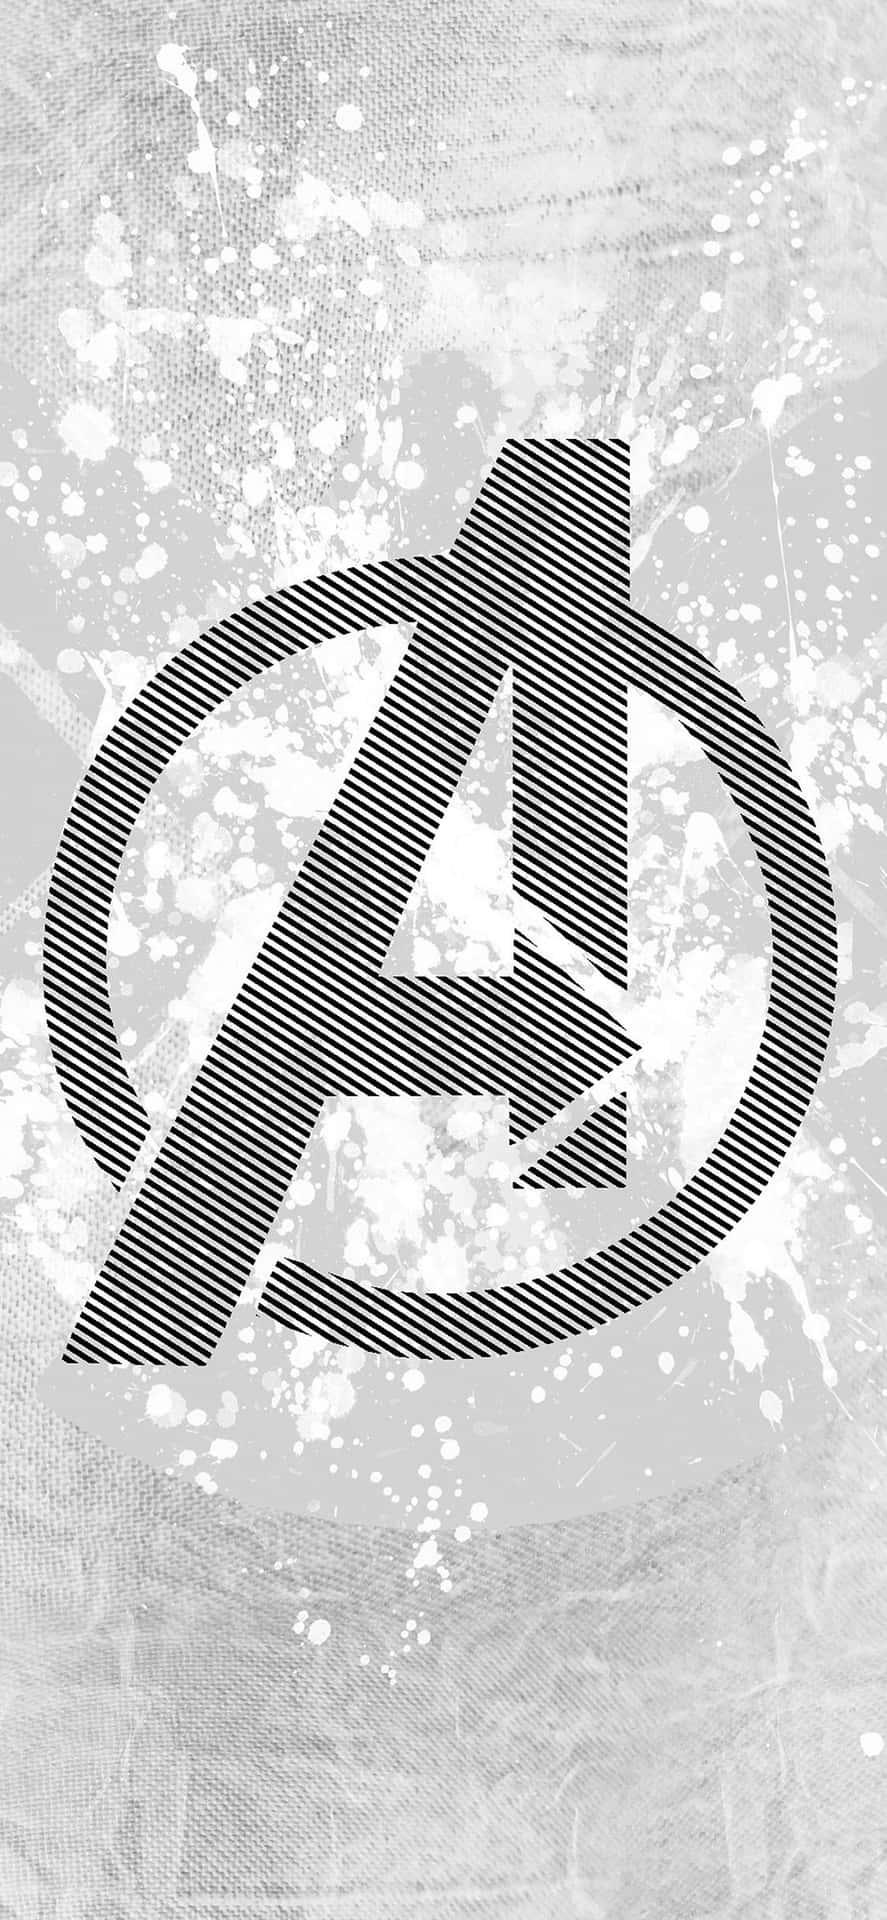 Armatu Equipo Con Un Iphone Xs Que Presenta A Los Avengers De Marvel.